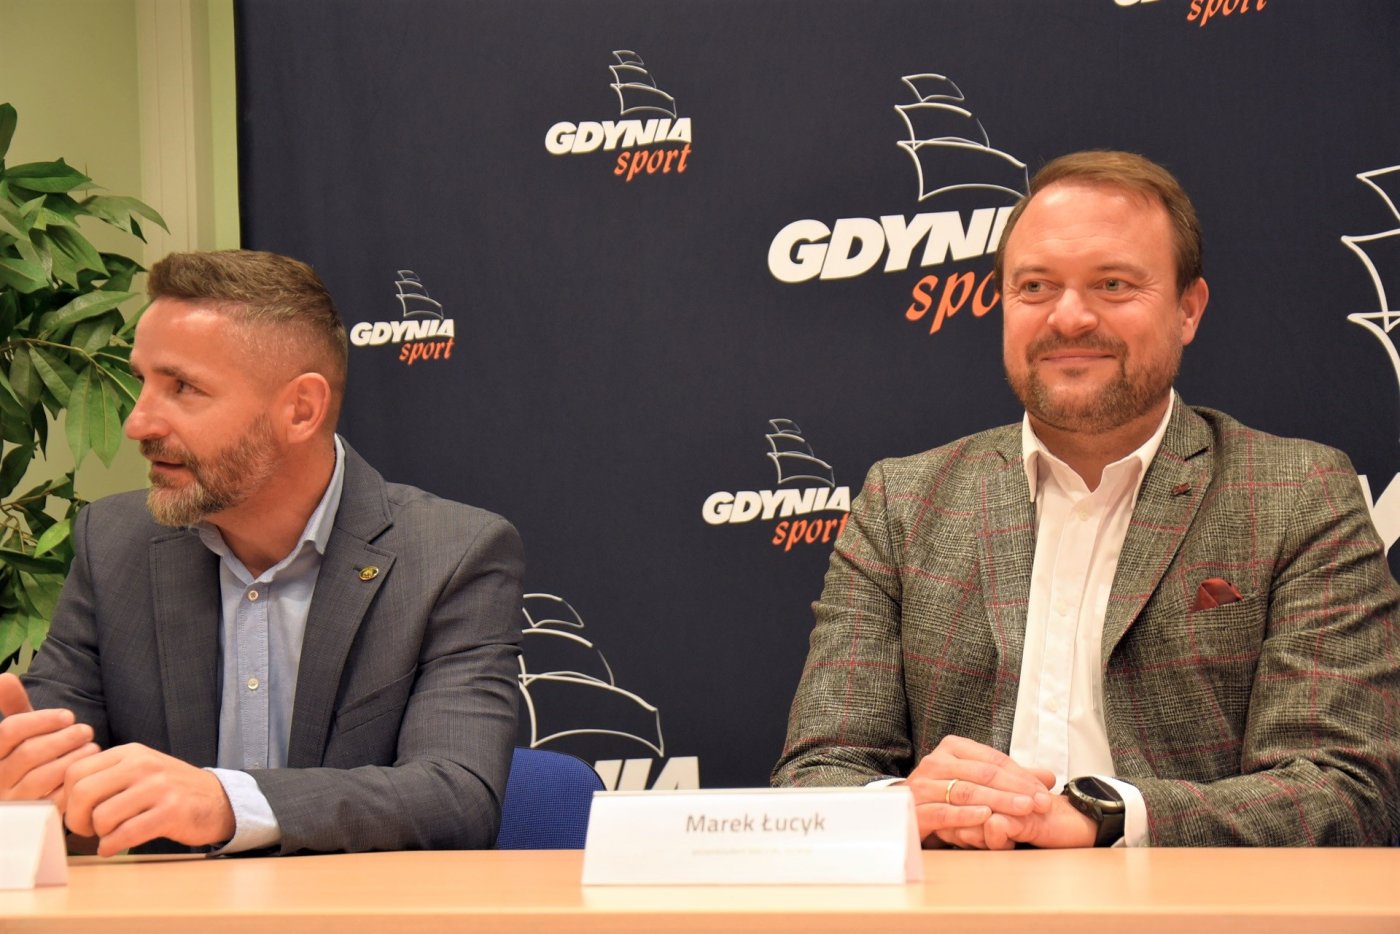 Rugby na międzynarodowym poziomie wraca do Gdyni po ośmiu latach // fot. Dawid Kowalski